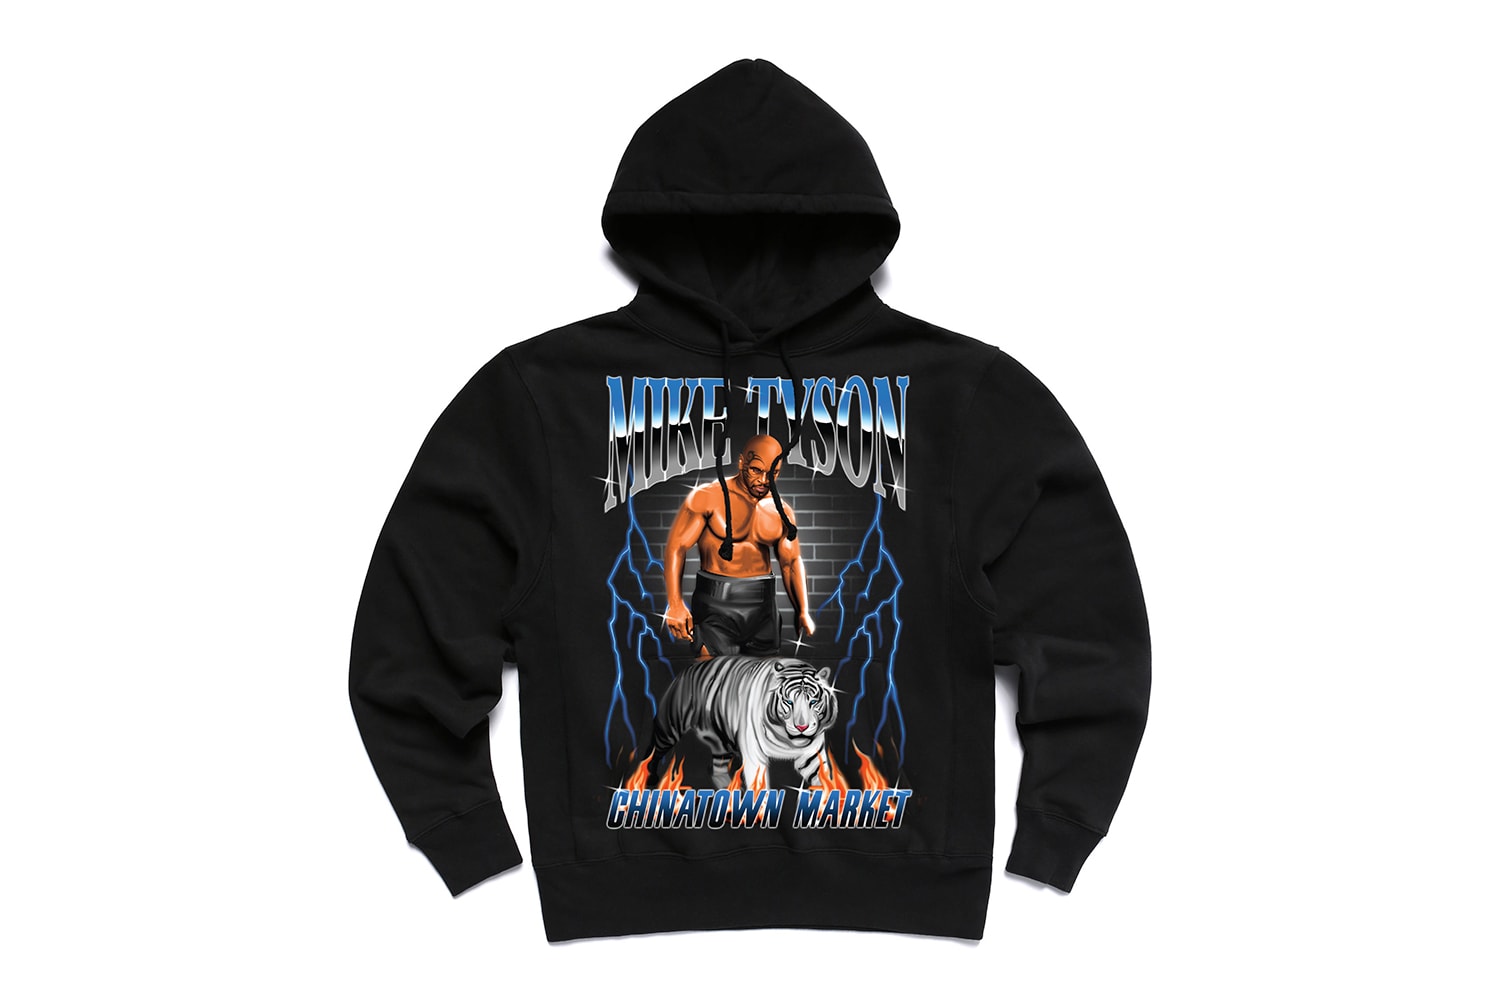 マイク・タイソン× Chinatown Market によるコラボカプセルコレクションが登場 Chinatown Market x Mike Tyson Capsule collection Release Info boxing graphic t-shirts hooded sweatshirts lookbook 